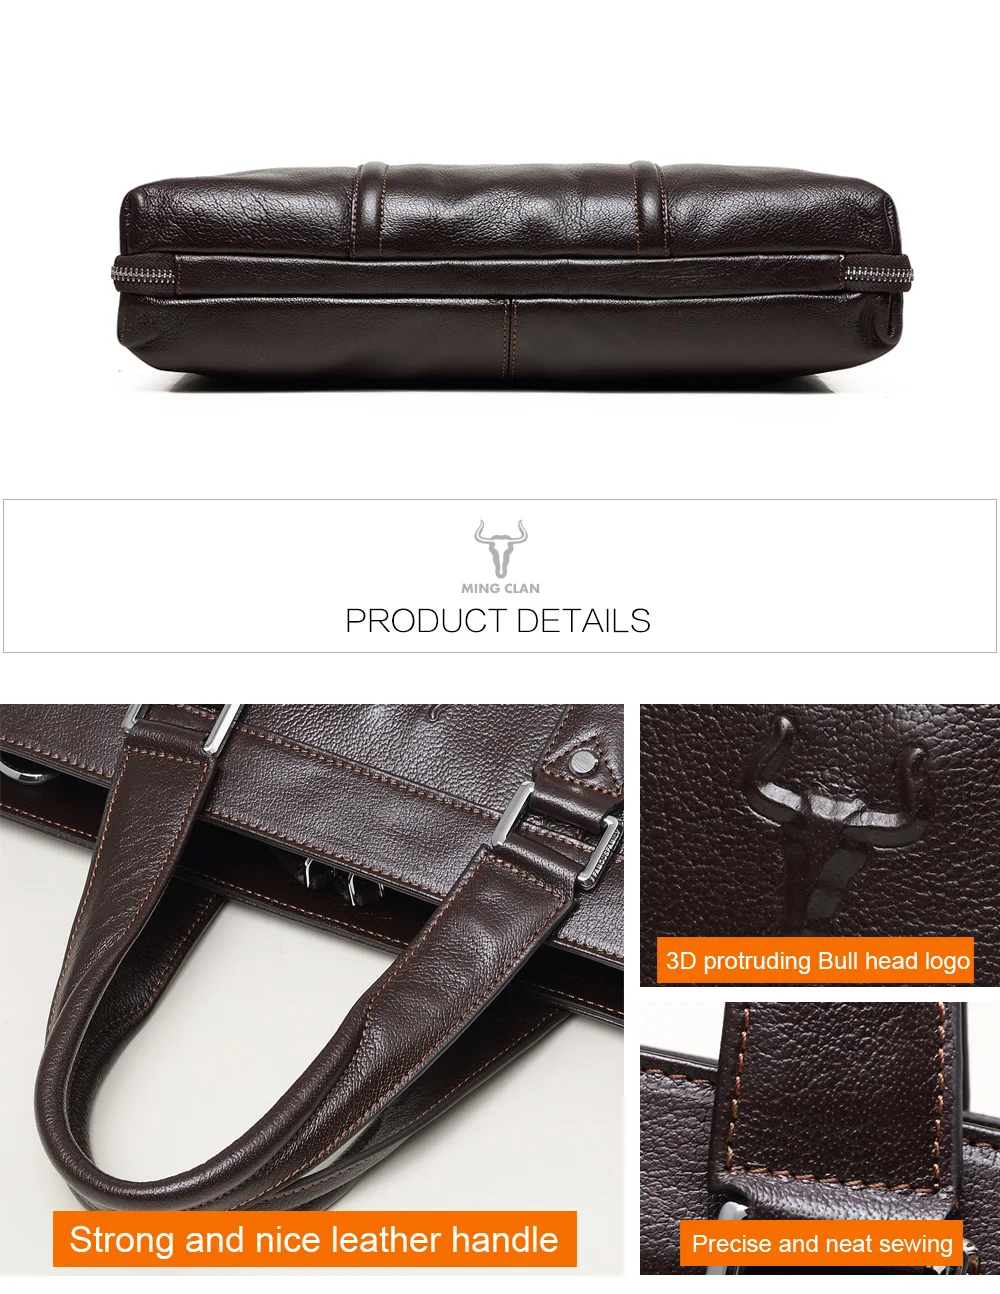 Брендовые Оригинальные кожаный деловой портфель сумка для ноутбука для мужчин плеча сумка-мессенджер портфель высокое ёмкость Crossbody